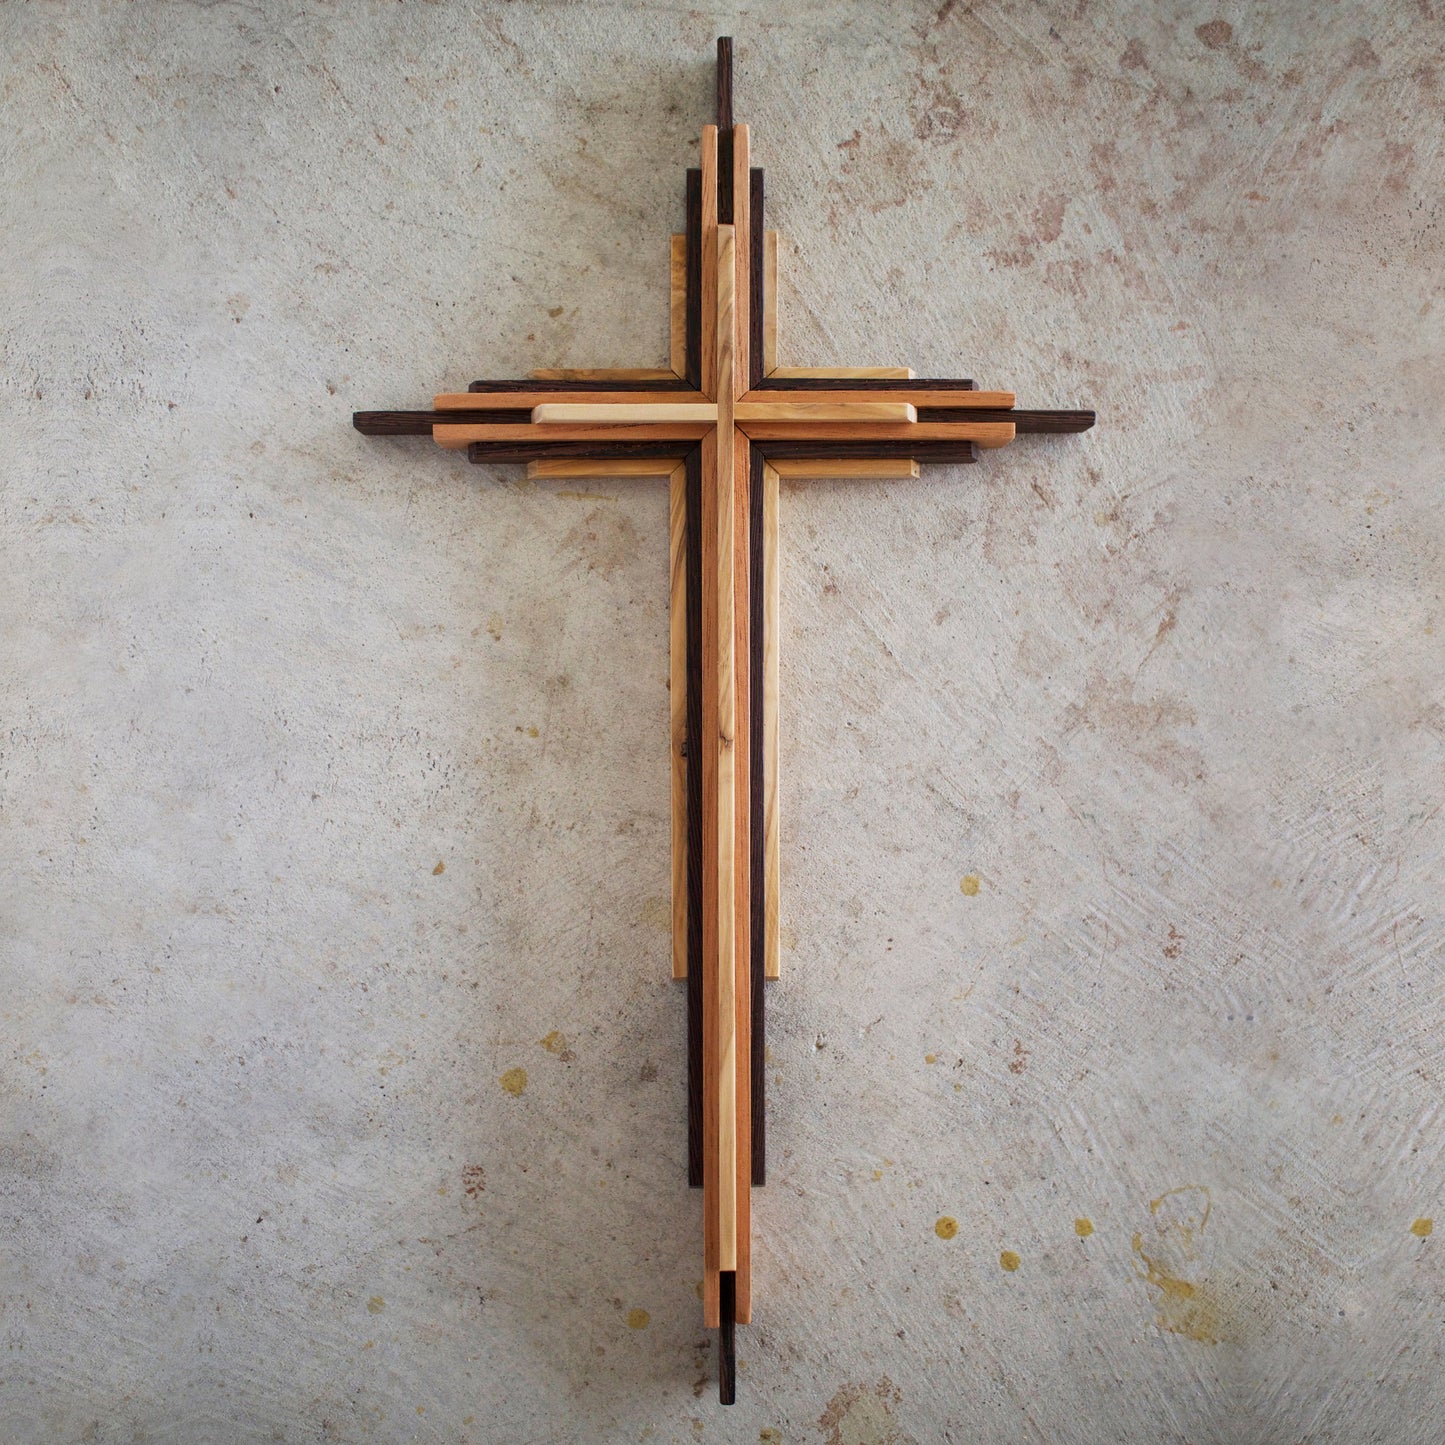 DIY Wooden Cross Plans